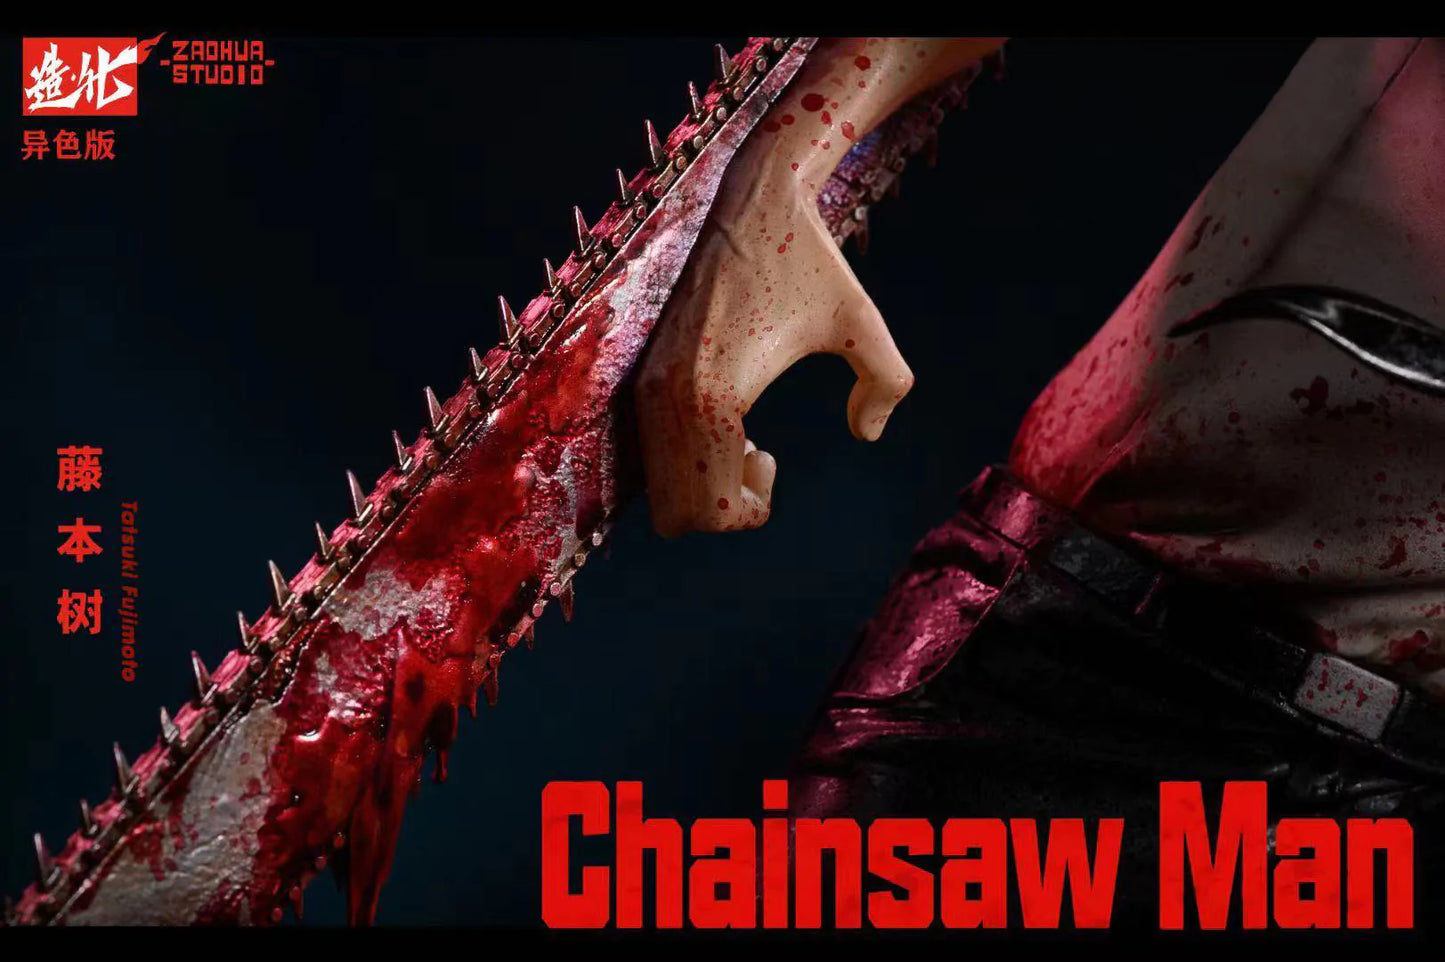 Chainsaw Man - Denji ZaoHua Studio